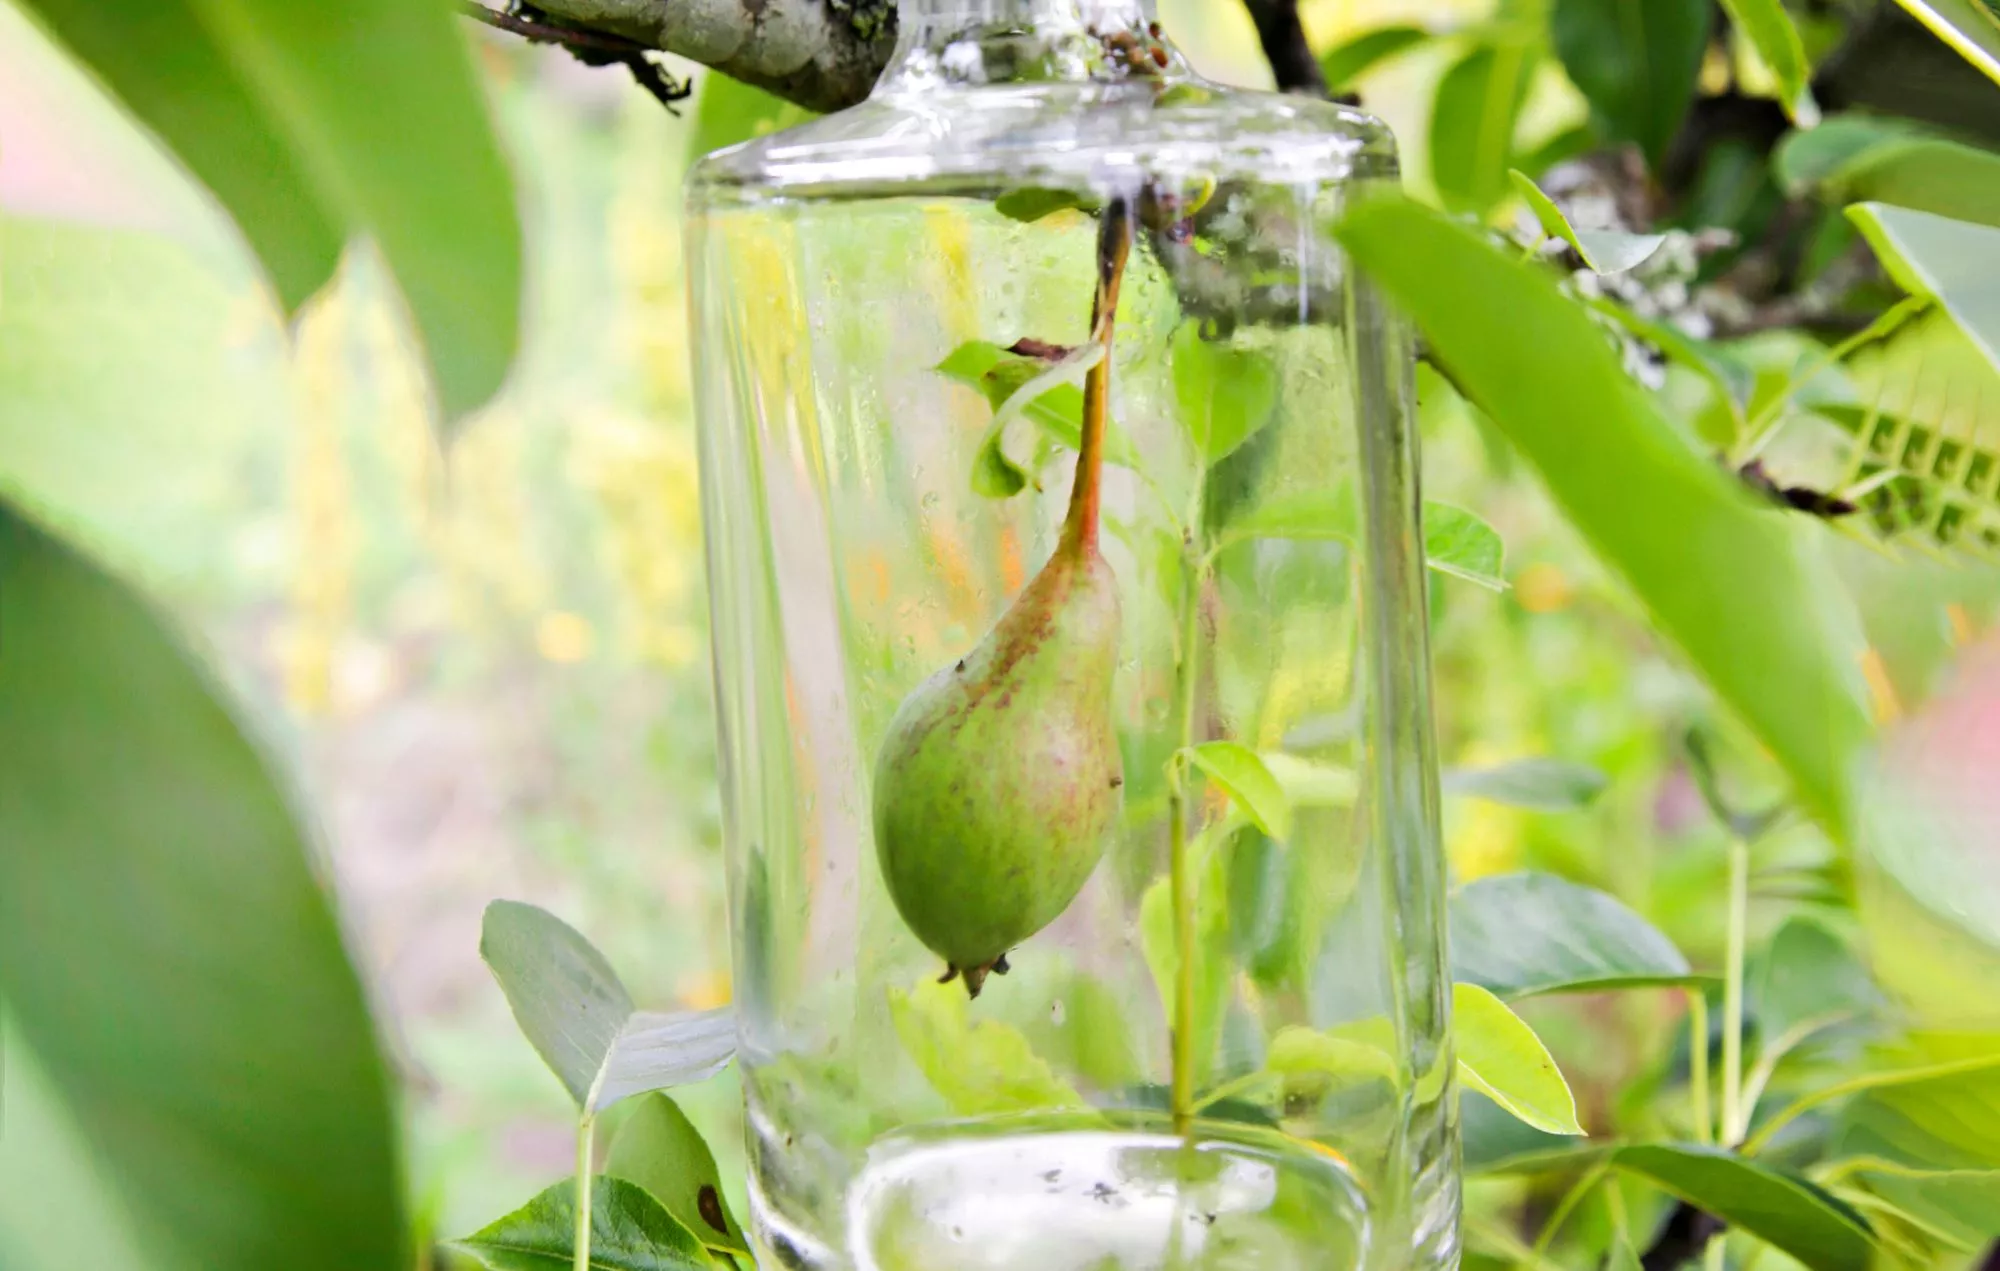 Pullopäärynä kypsyttää hedelmän suoraan lasipullon sisään.